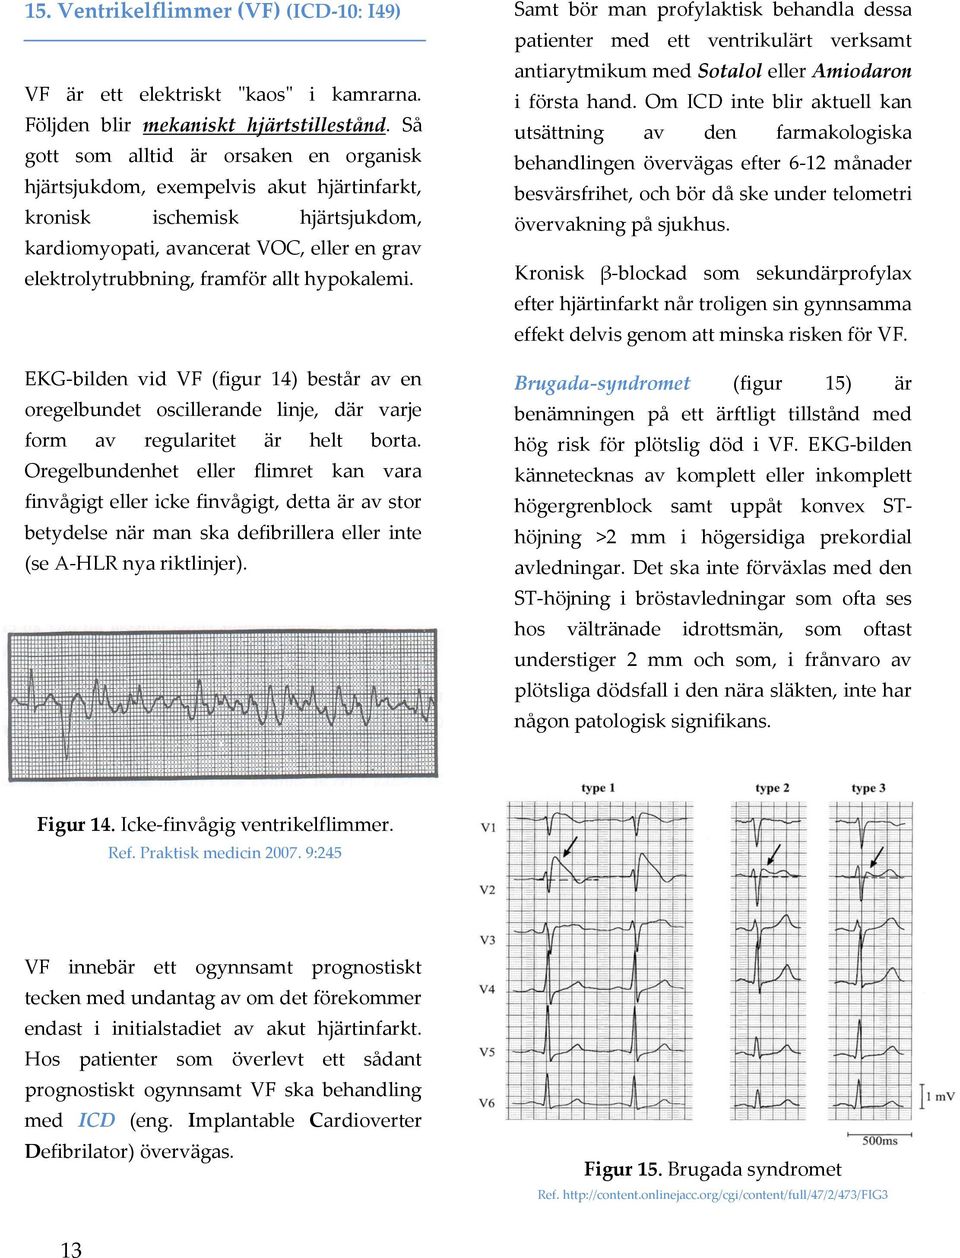 hypokalemi. EKG-bilden vid VF (figur 14) består av en oregelbundet oscillerande linje, där varje form av regularitet är helt borta.